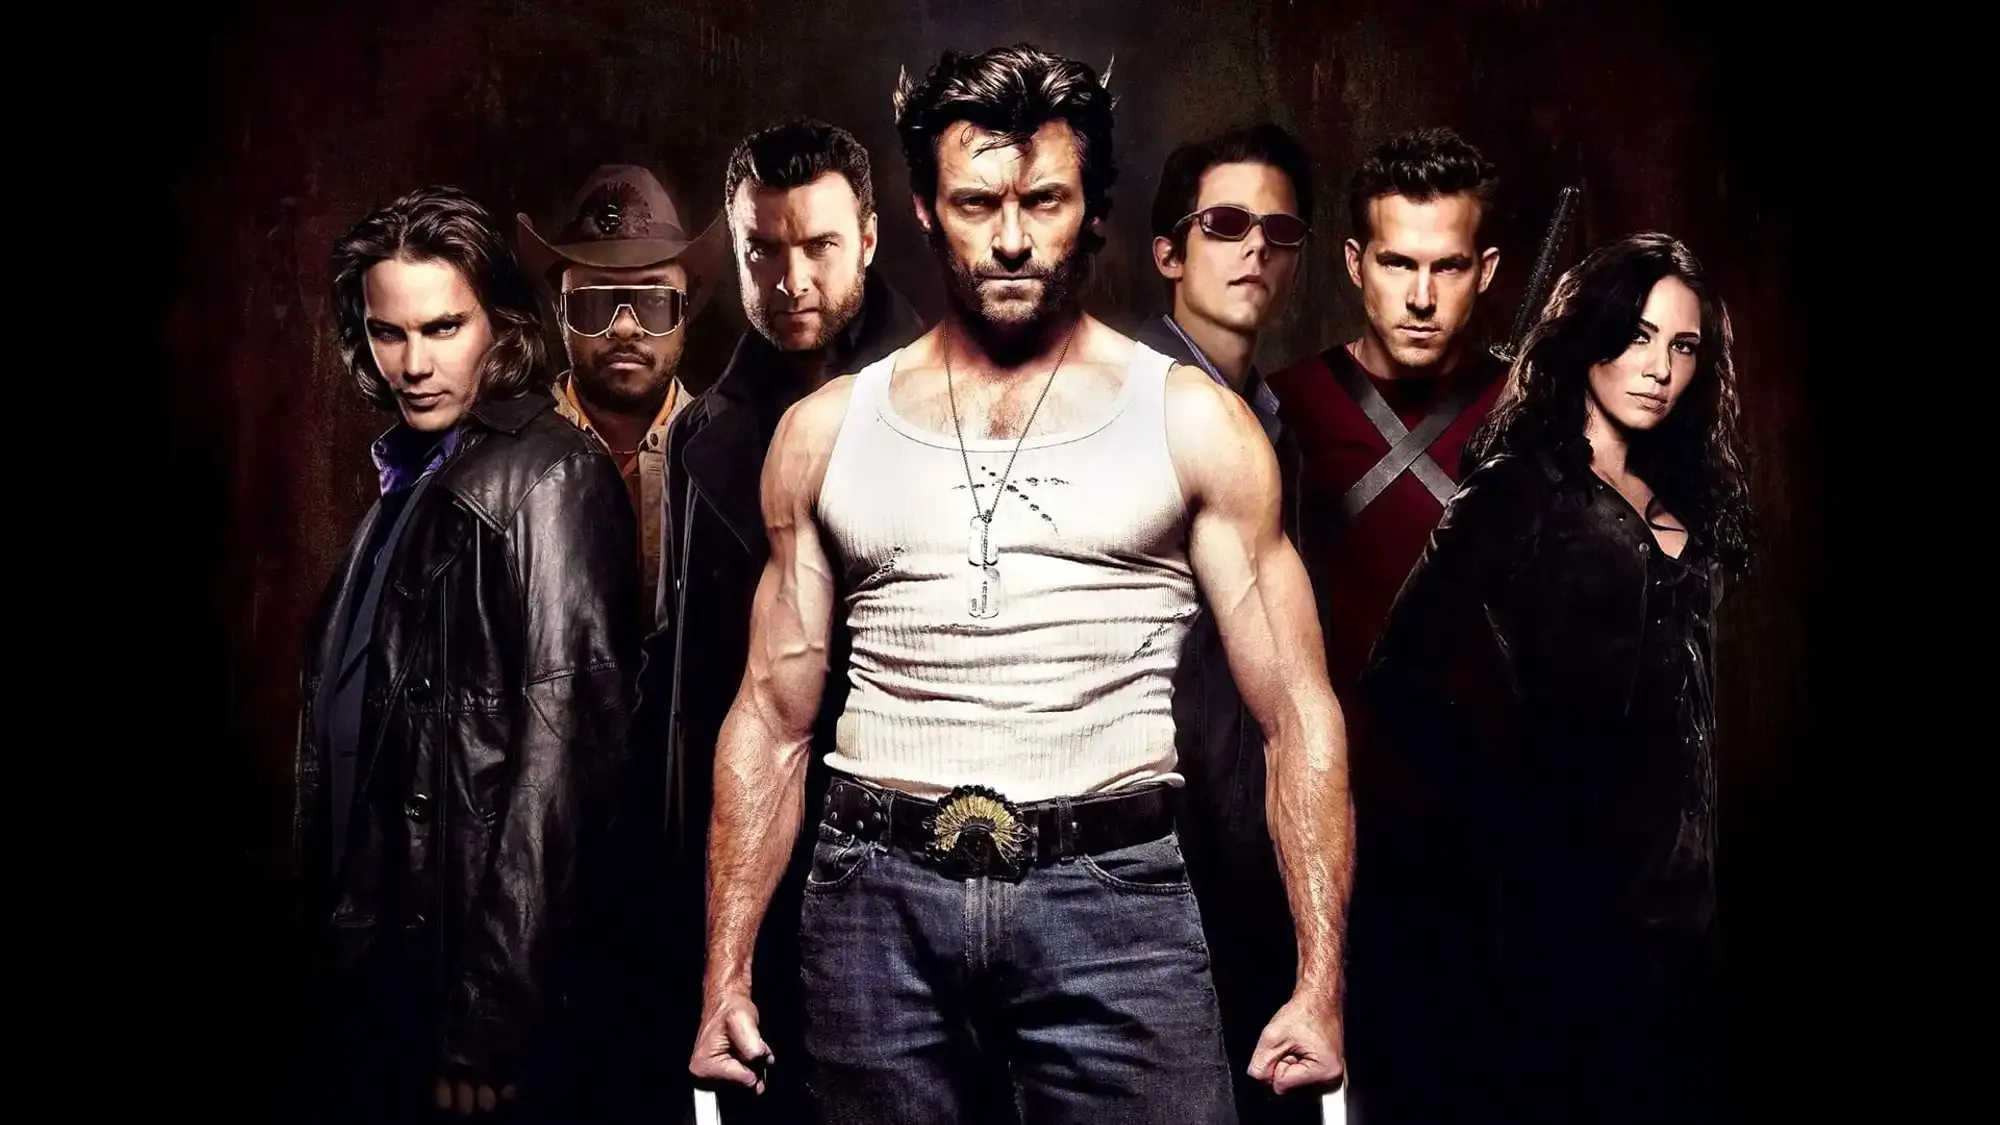 X-Men Origins: Wolverine movie review